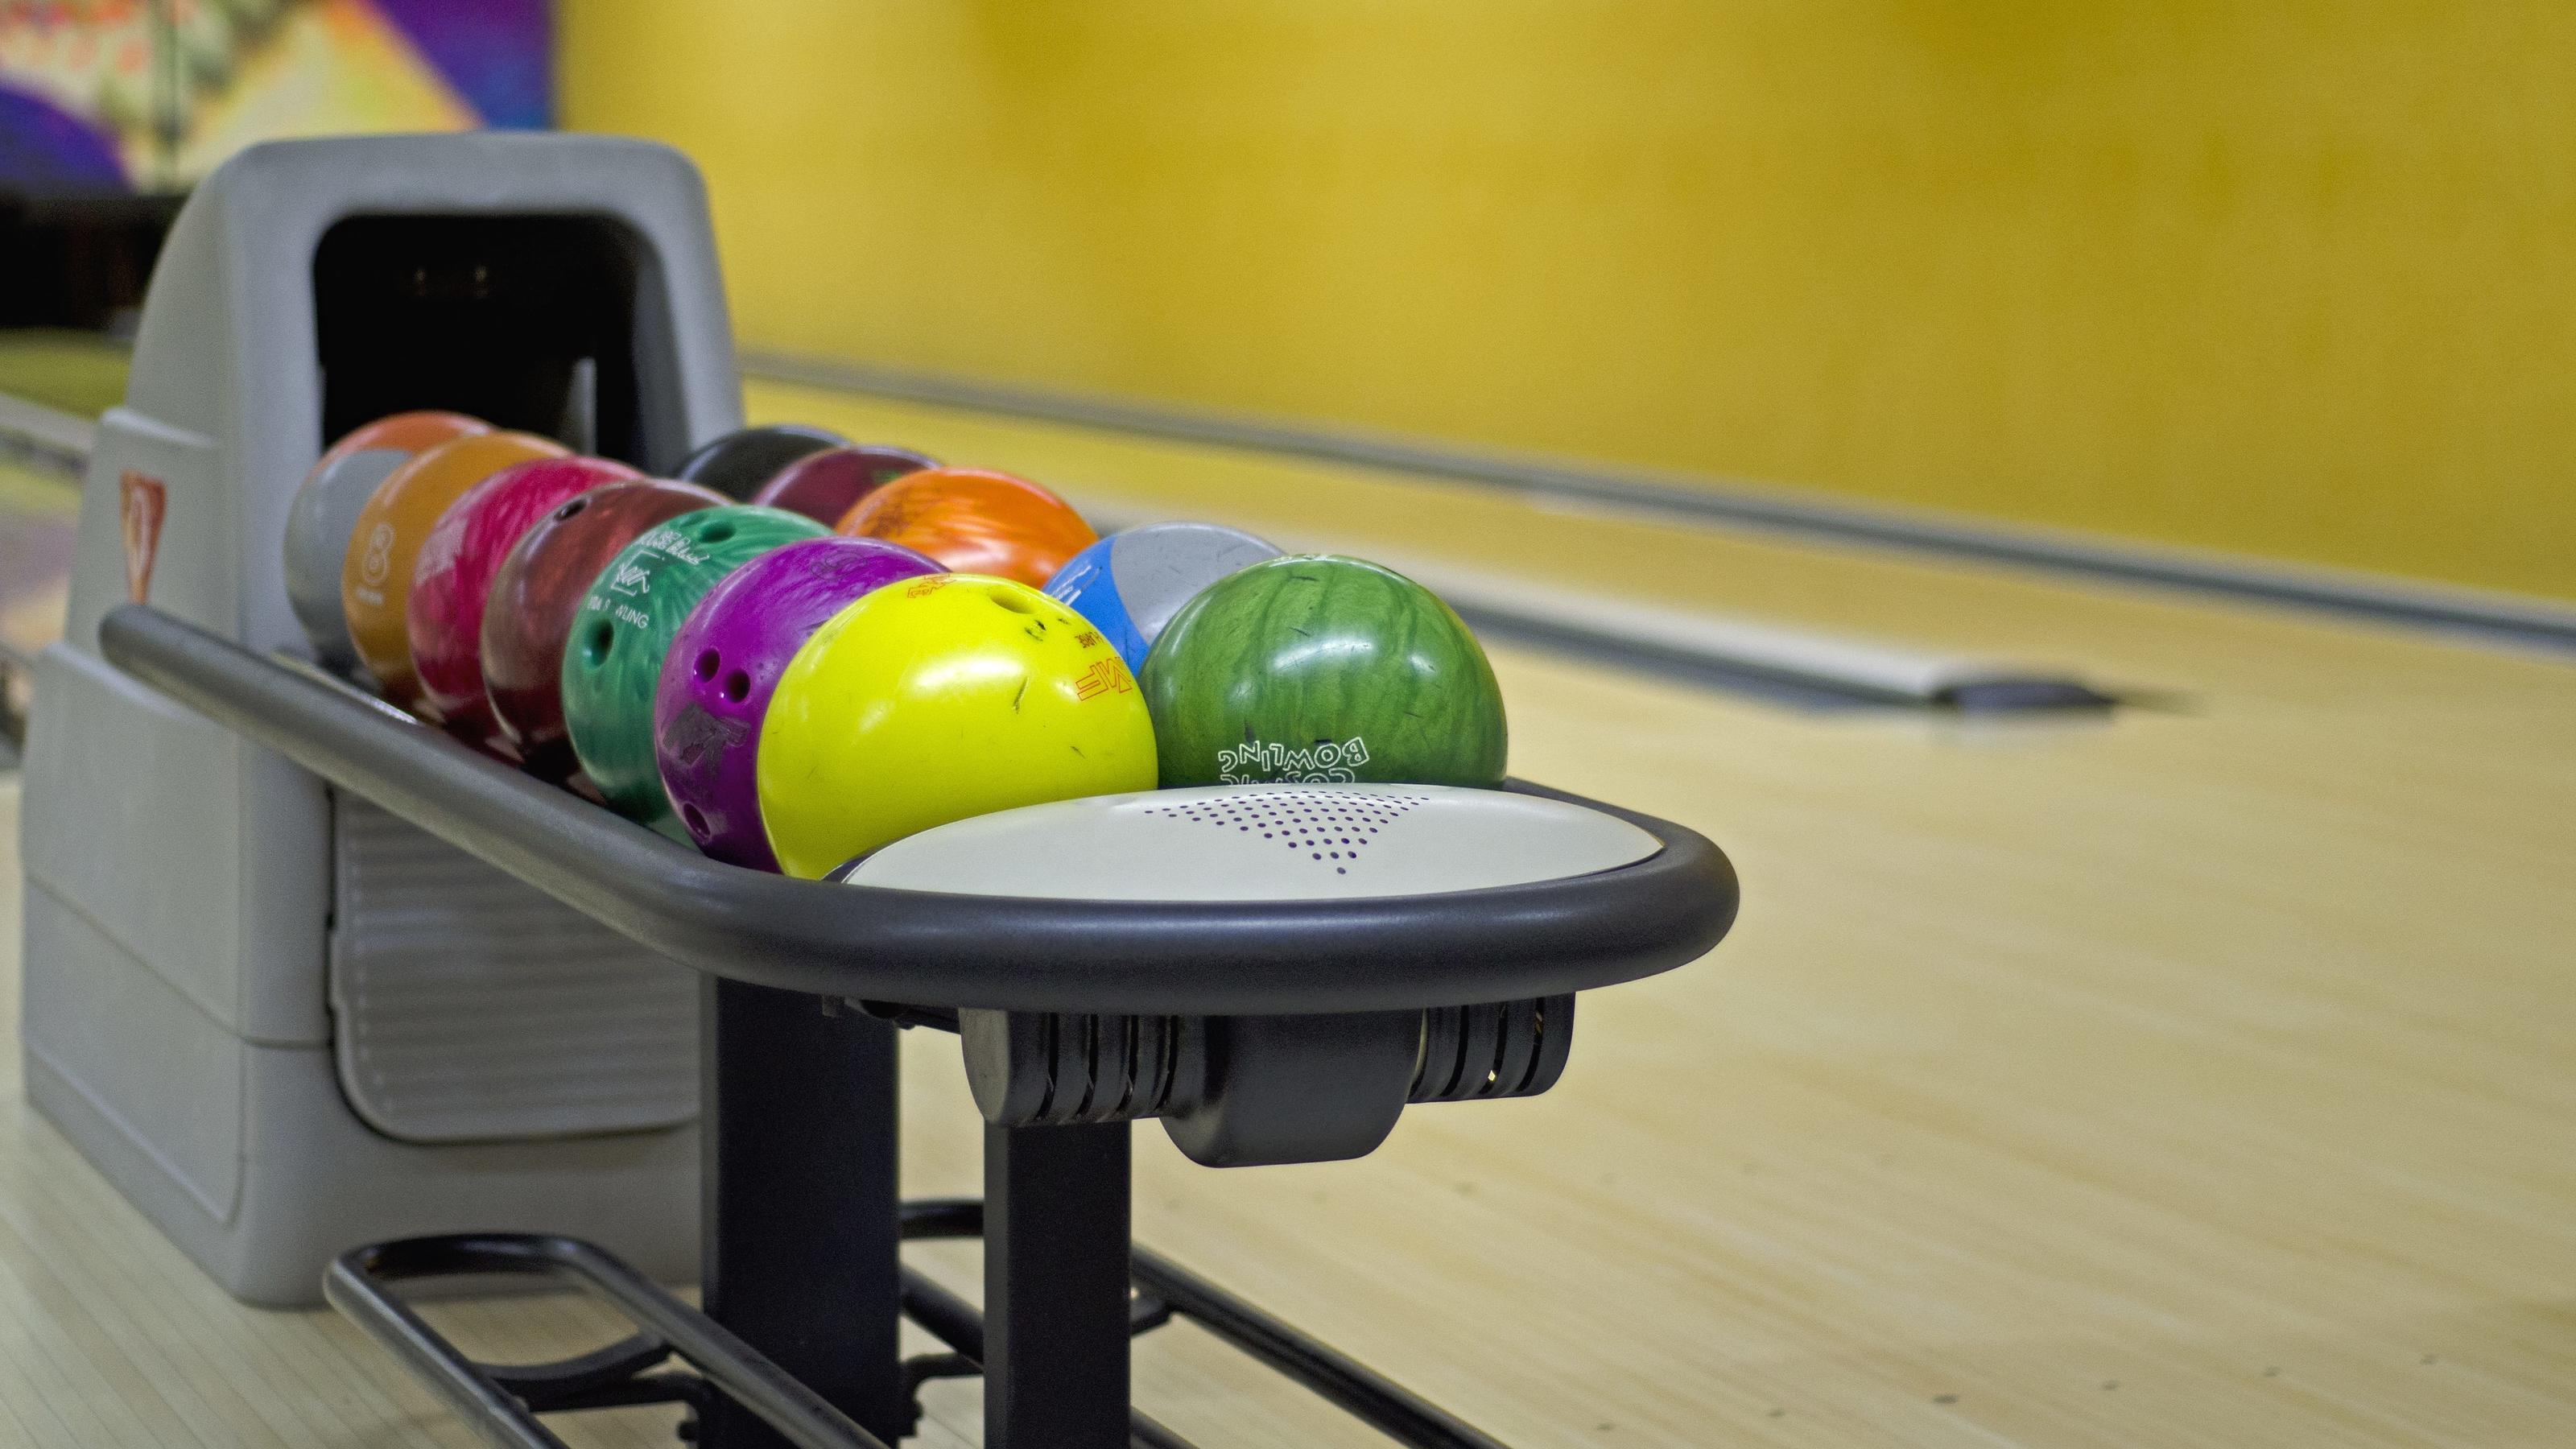 Bowlingkugeln auf einer Bowlingbahn | Verwendung weltweit